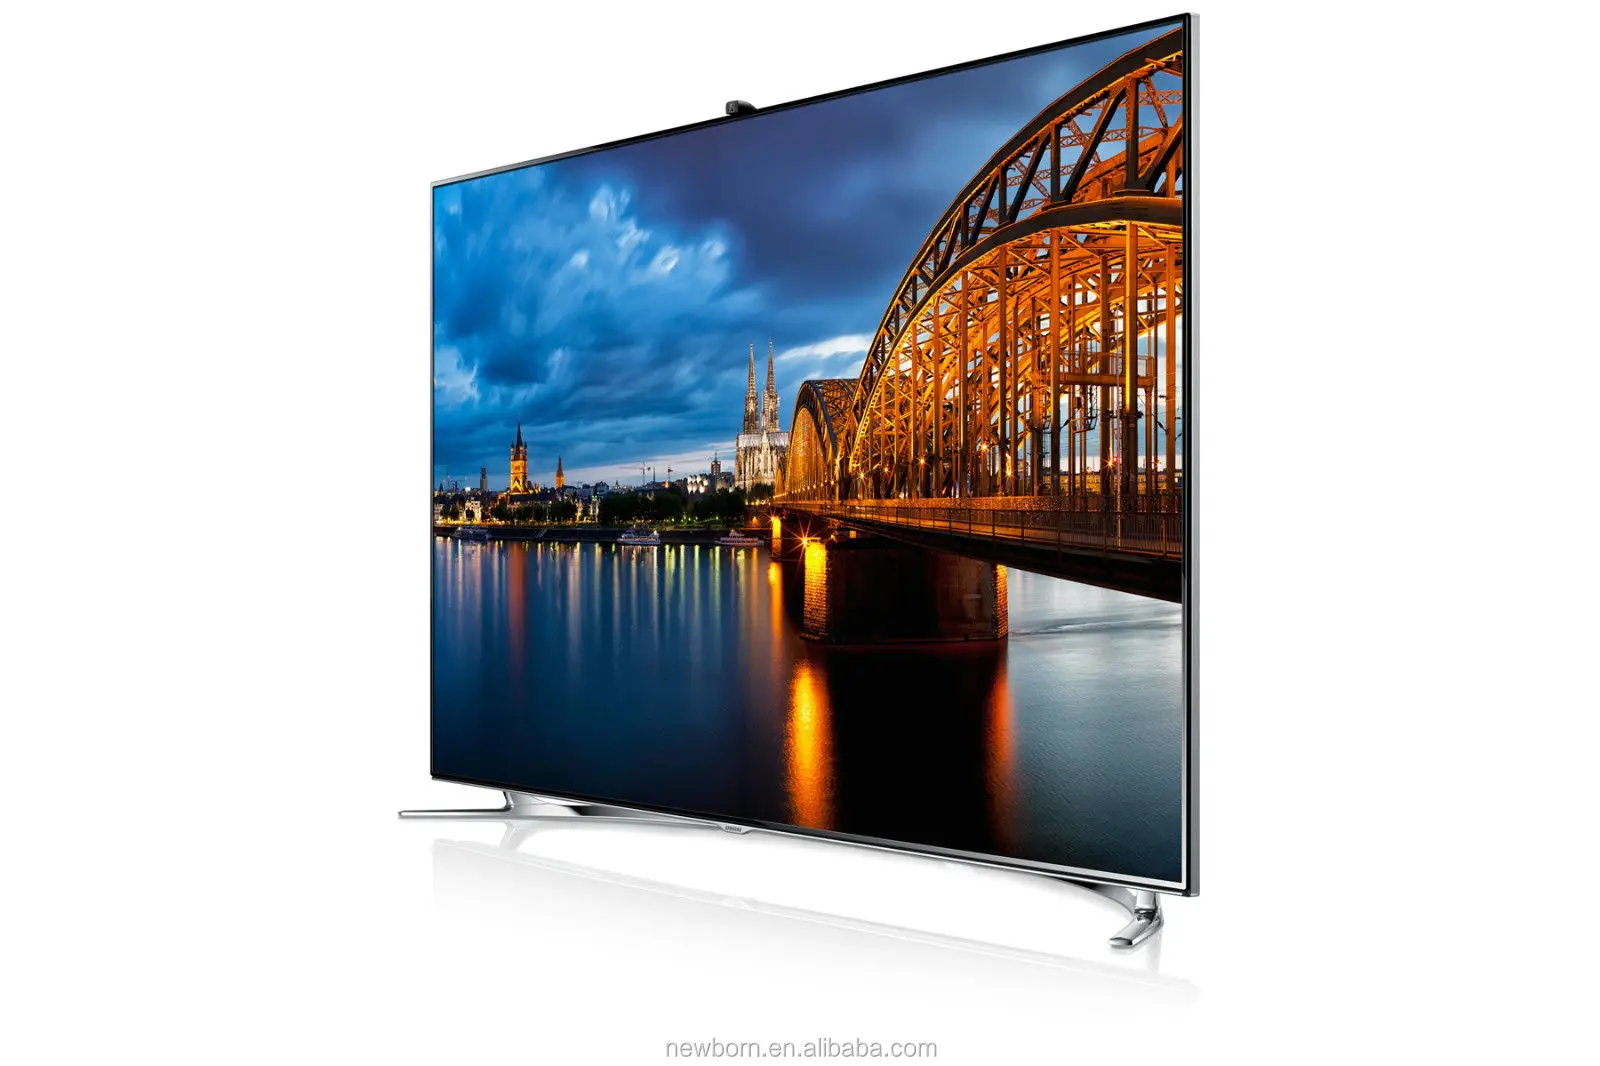 Телевизор самсунг волгоград. Samsung ue46f8000 led. Samsung f8000 55 телевизор. Samsung 40 f8000. Samsung led 55 Smart TV.